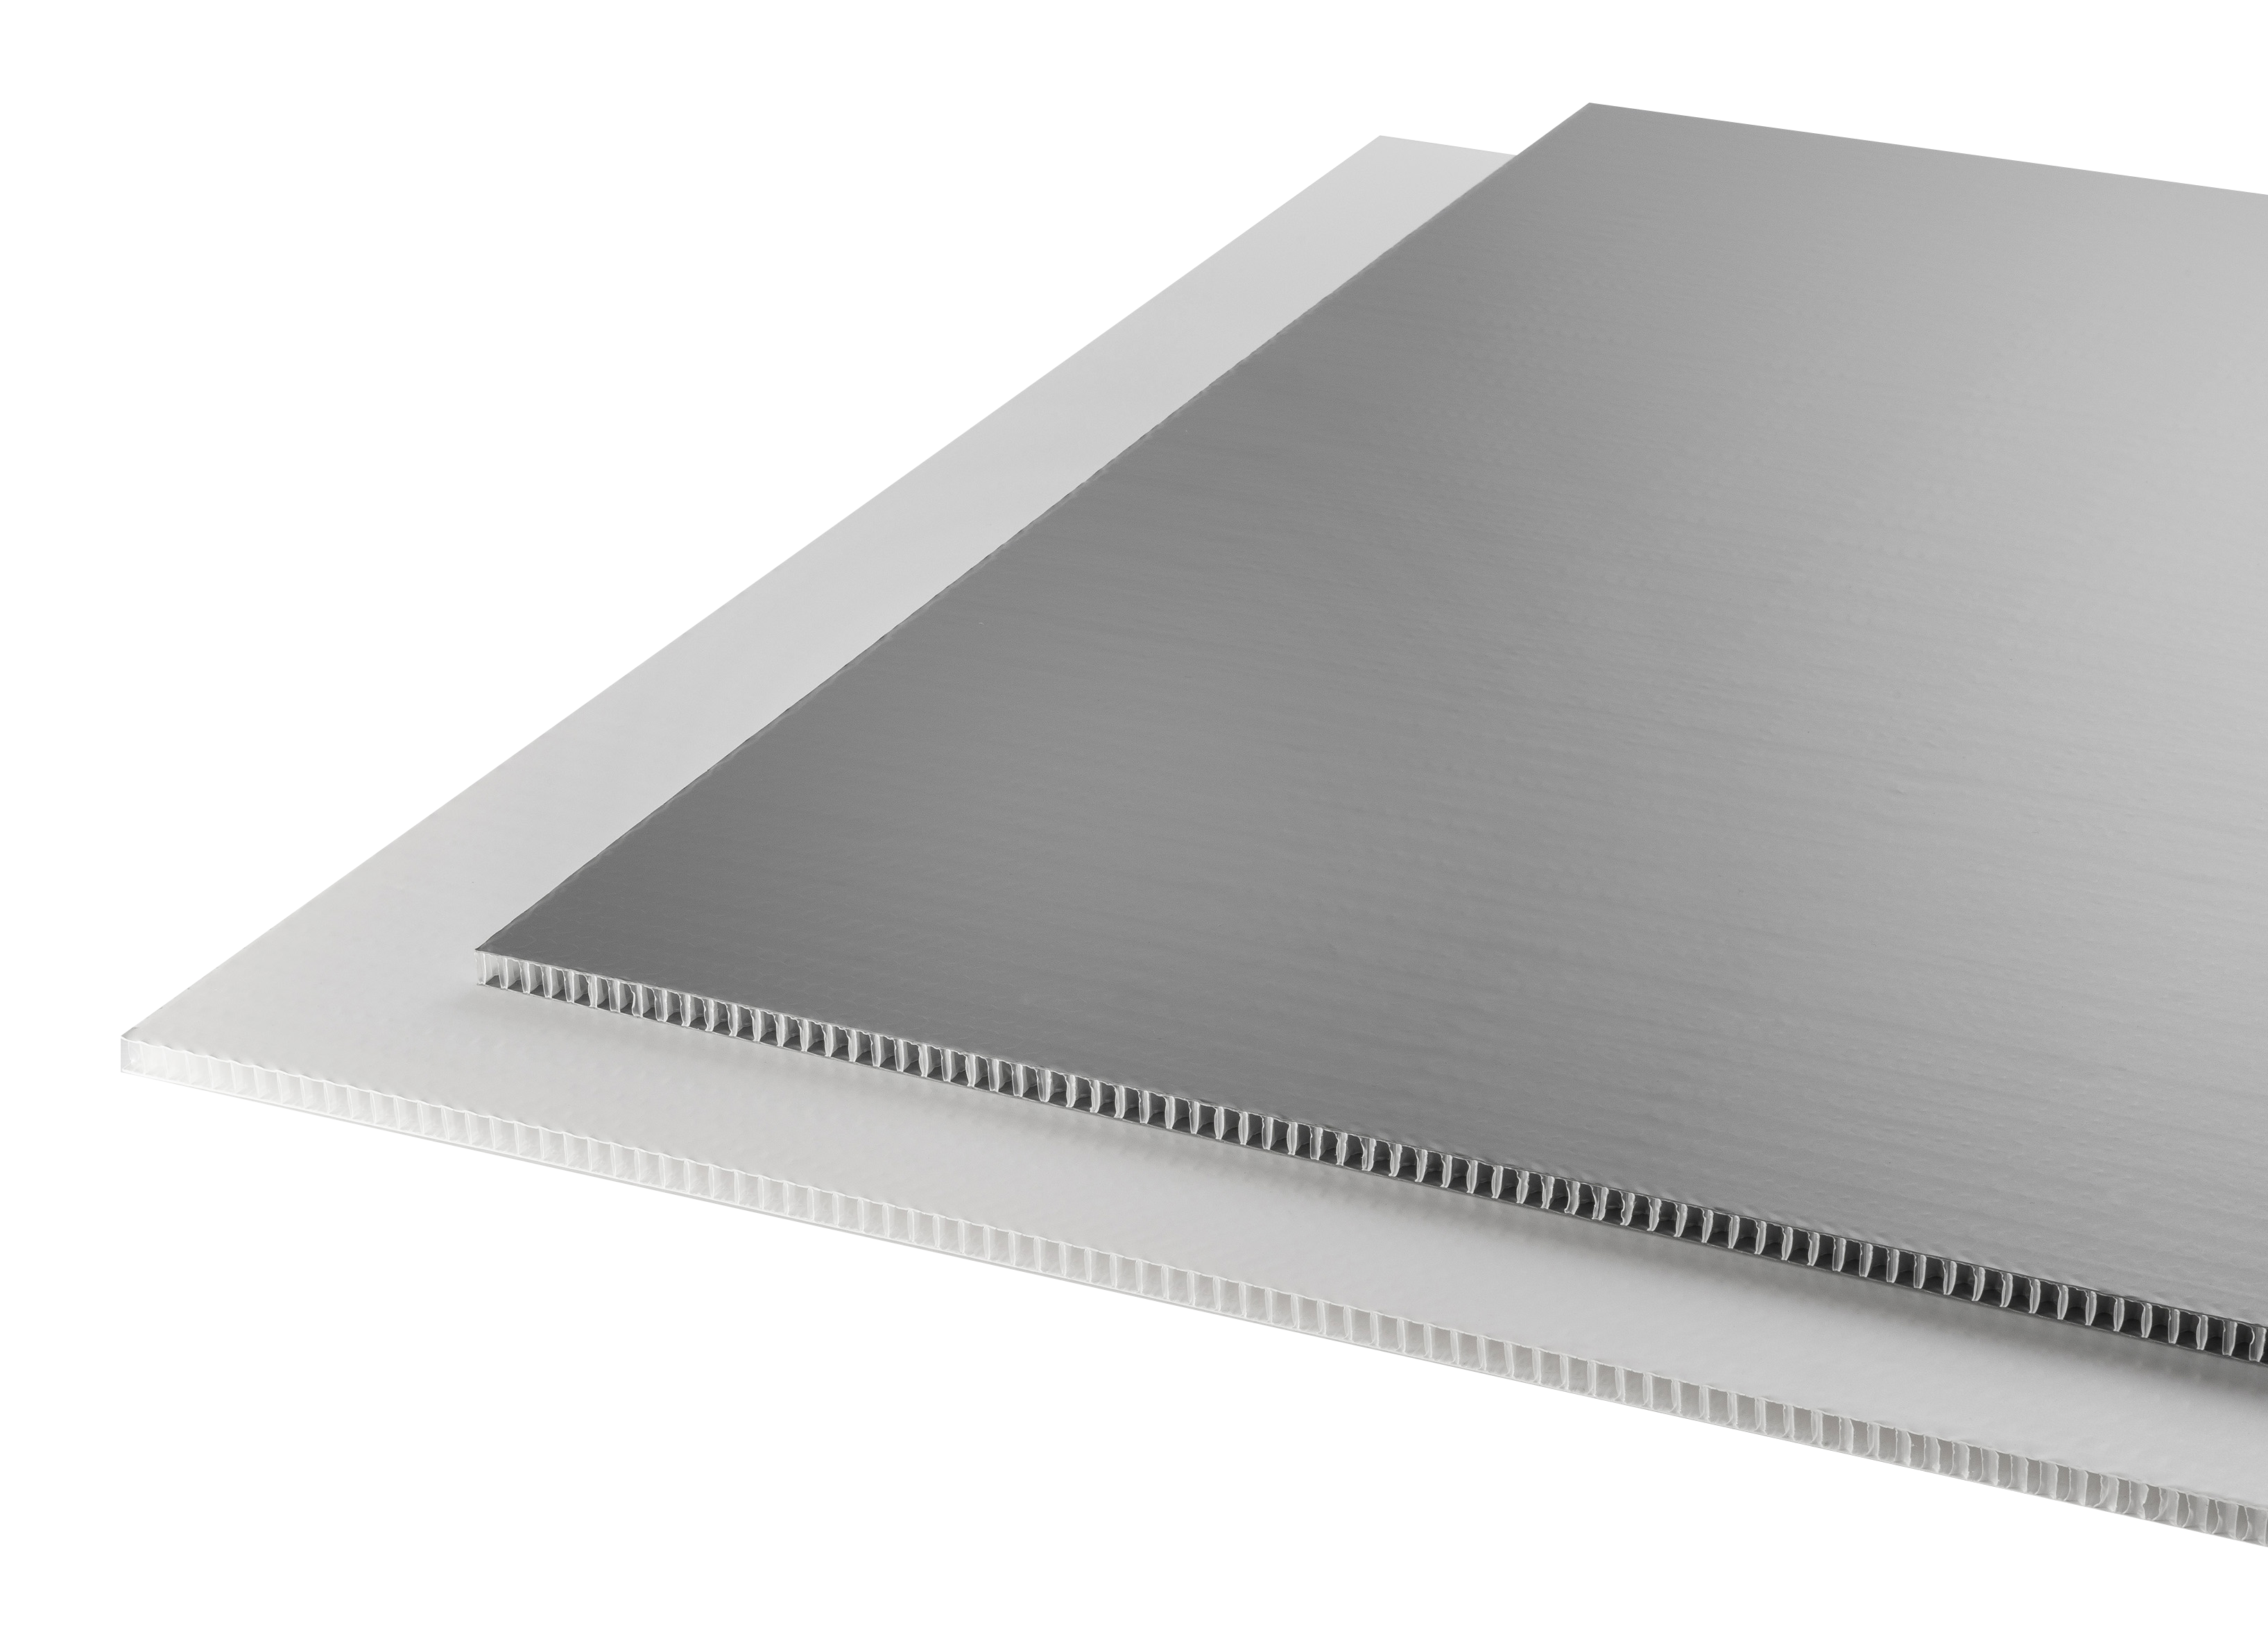 Plancha de metacrilato Tauro Transparente 100x50 5 mm de grosor.  Resistente, Transparente y Versátil.